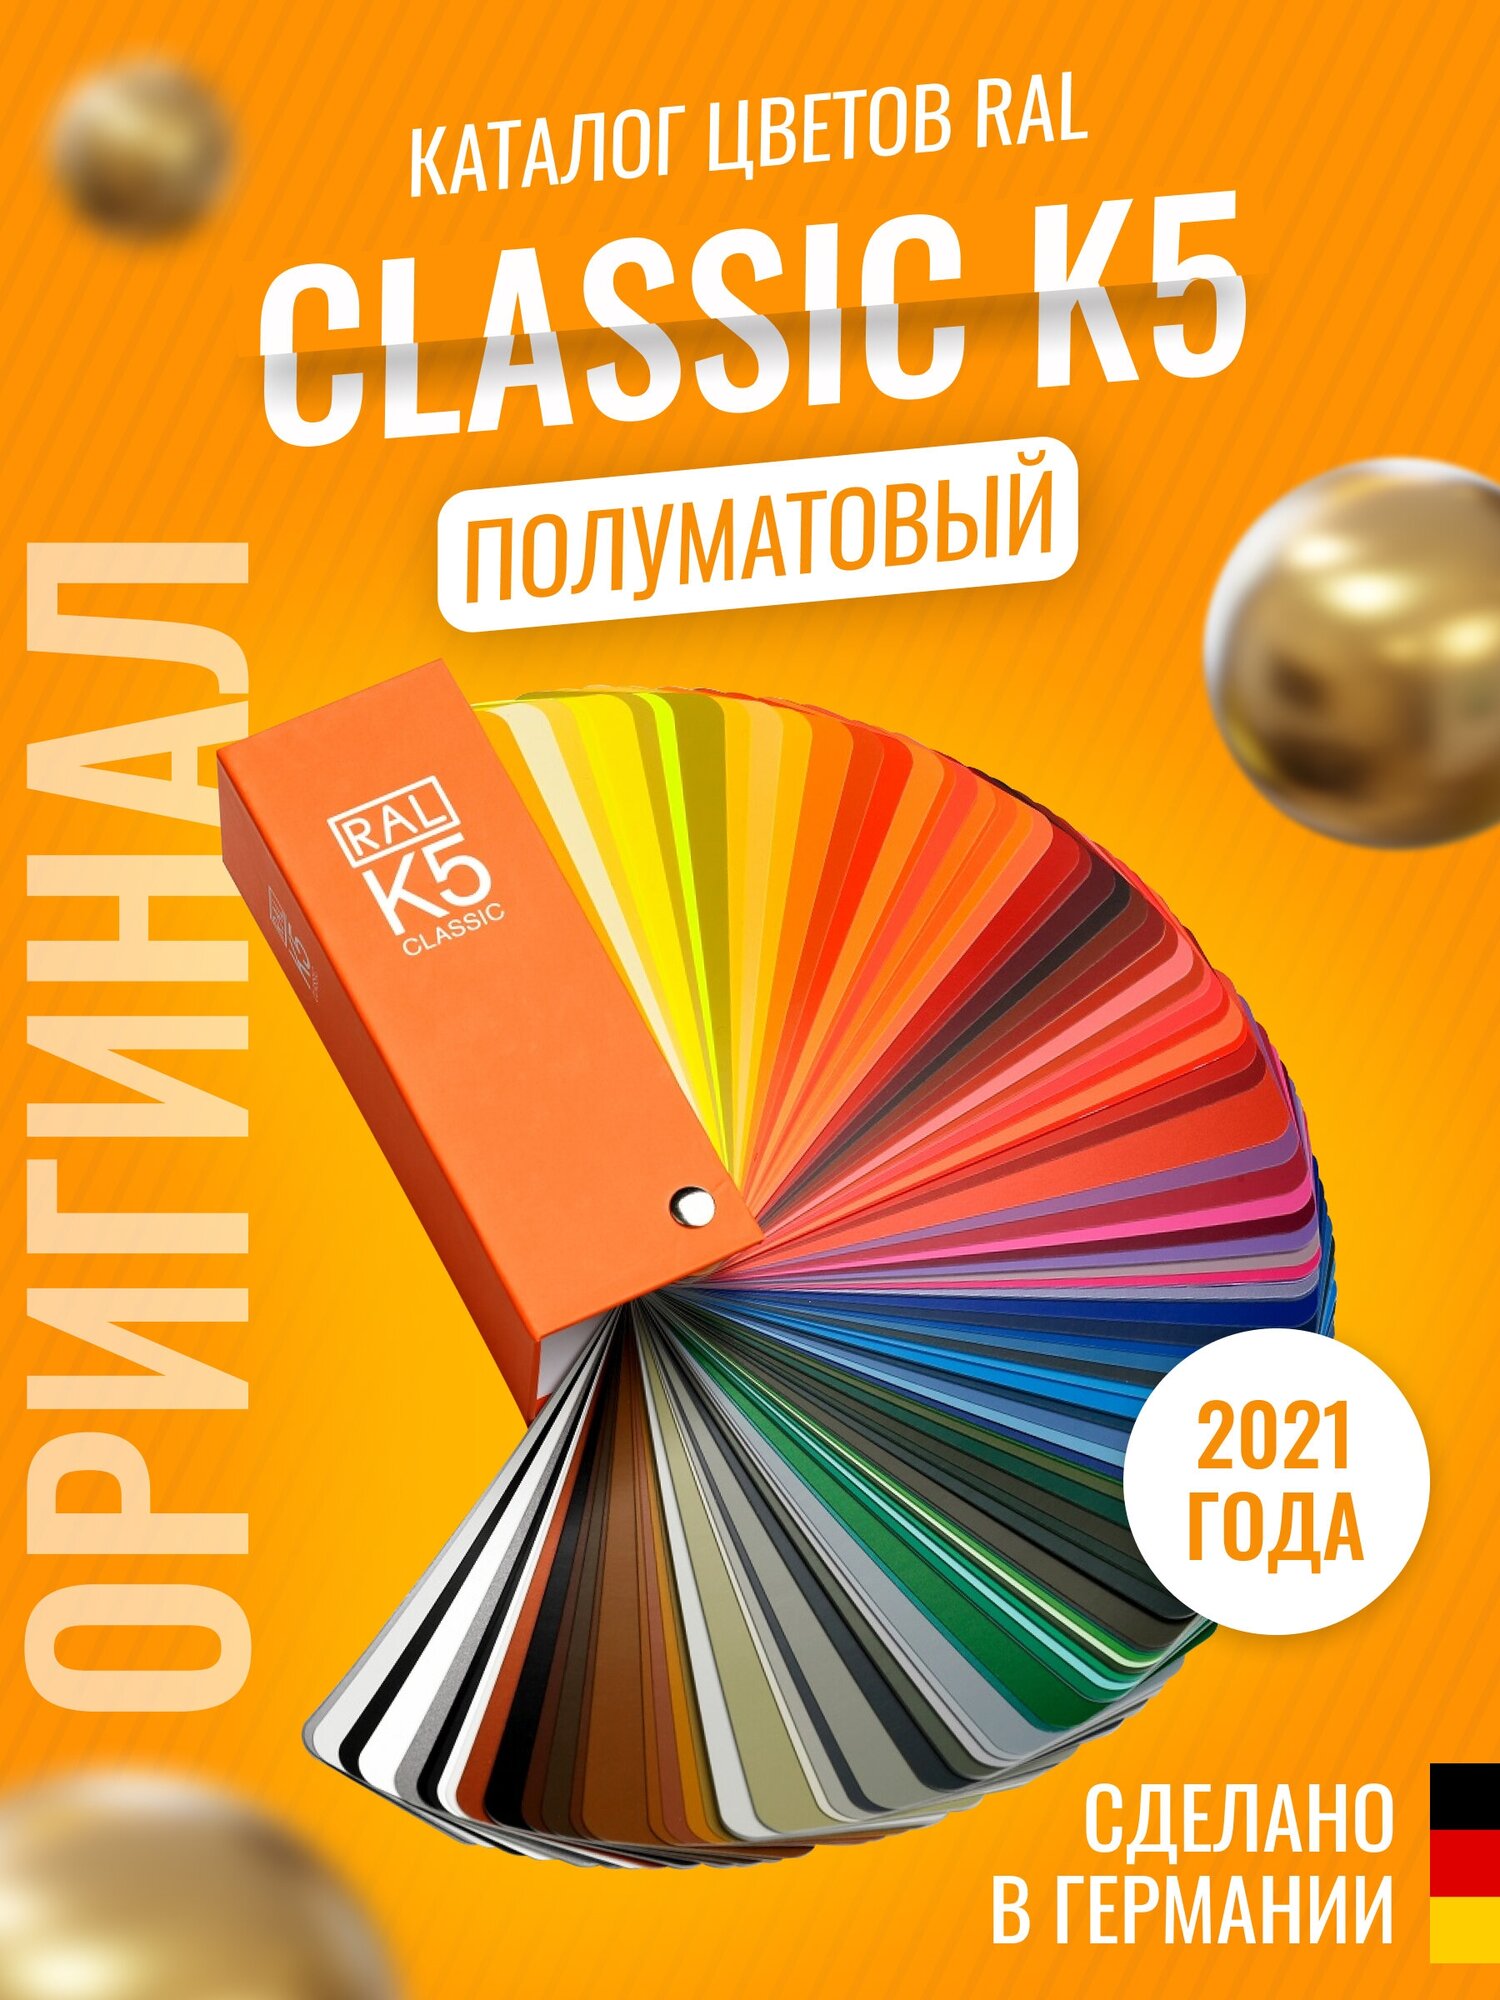 Цветовой каталог RAL Classic K5 (полуматовый)